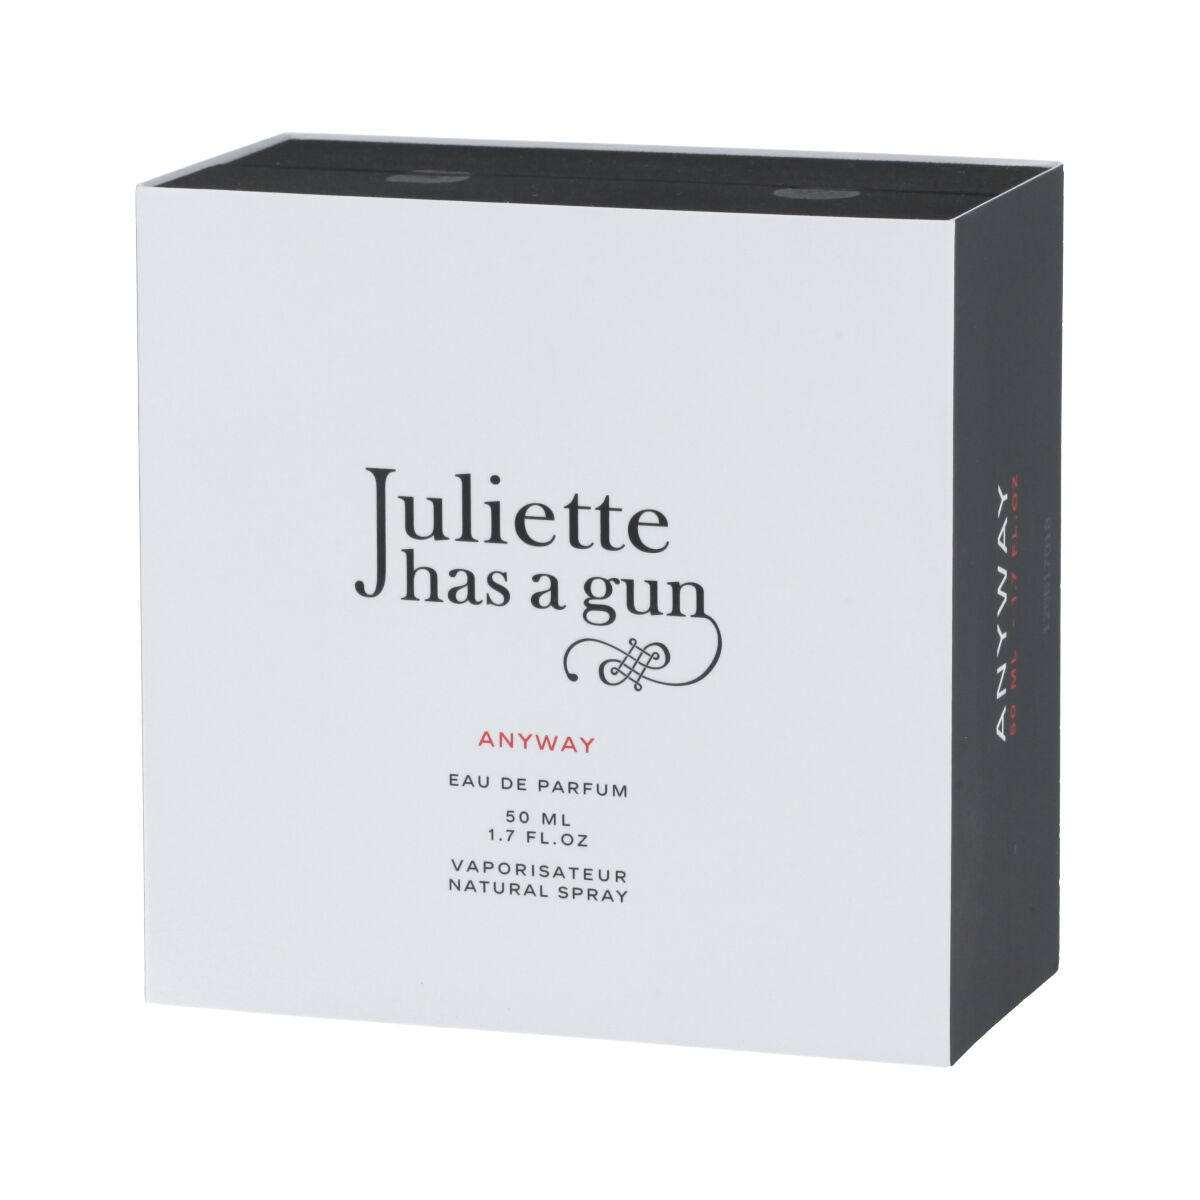 Kaufe Unisex-Parfüm Juliette Has A Gun EDP Anyway 50 ml bei AWK Flagship um € 63.00